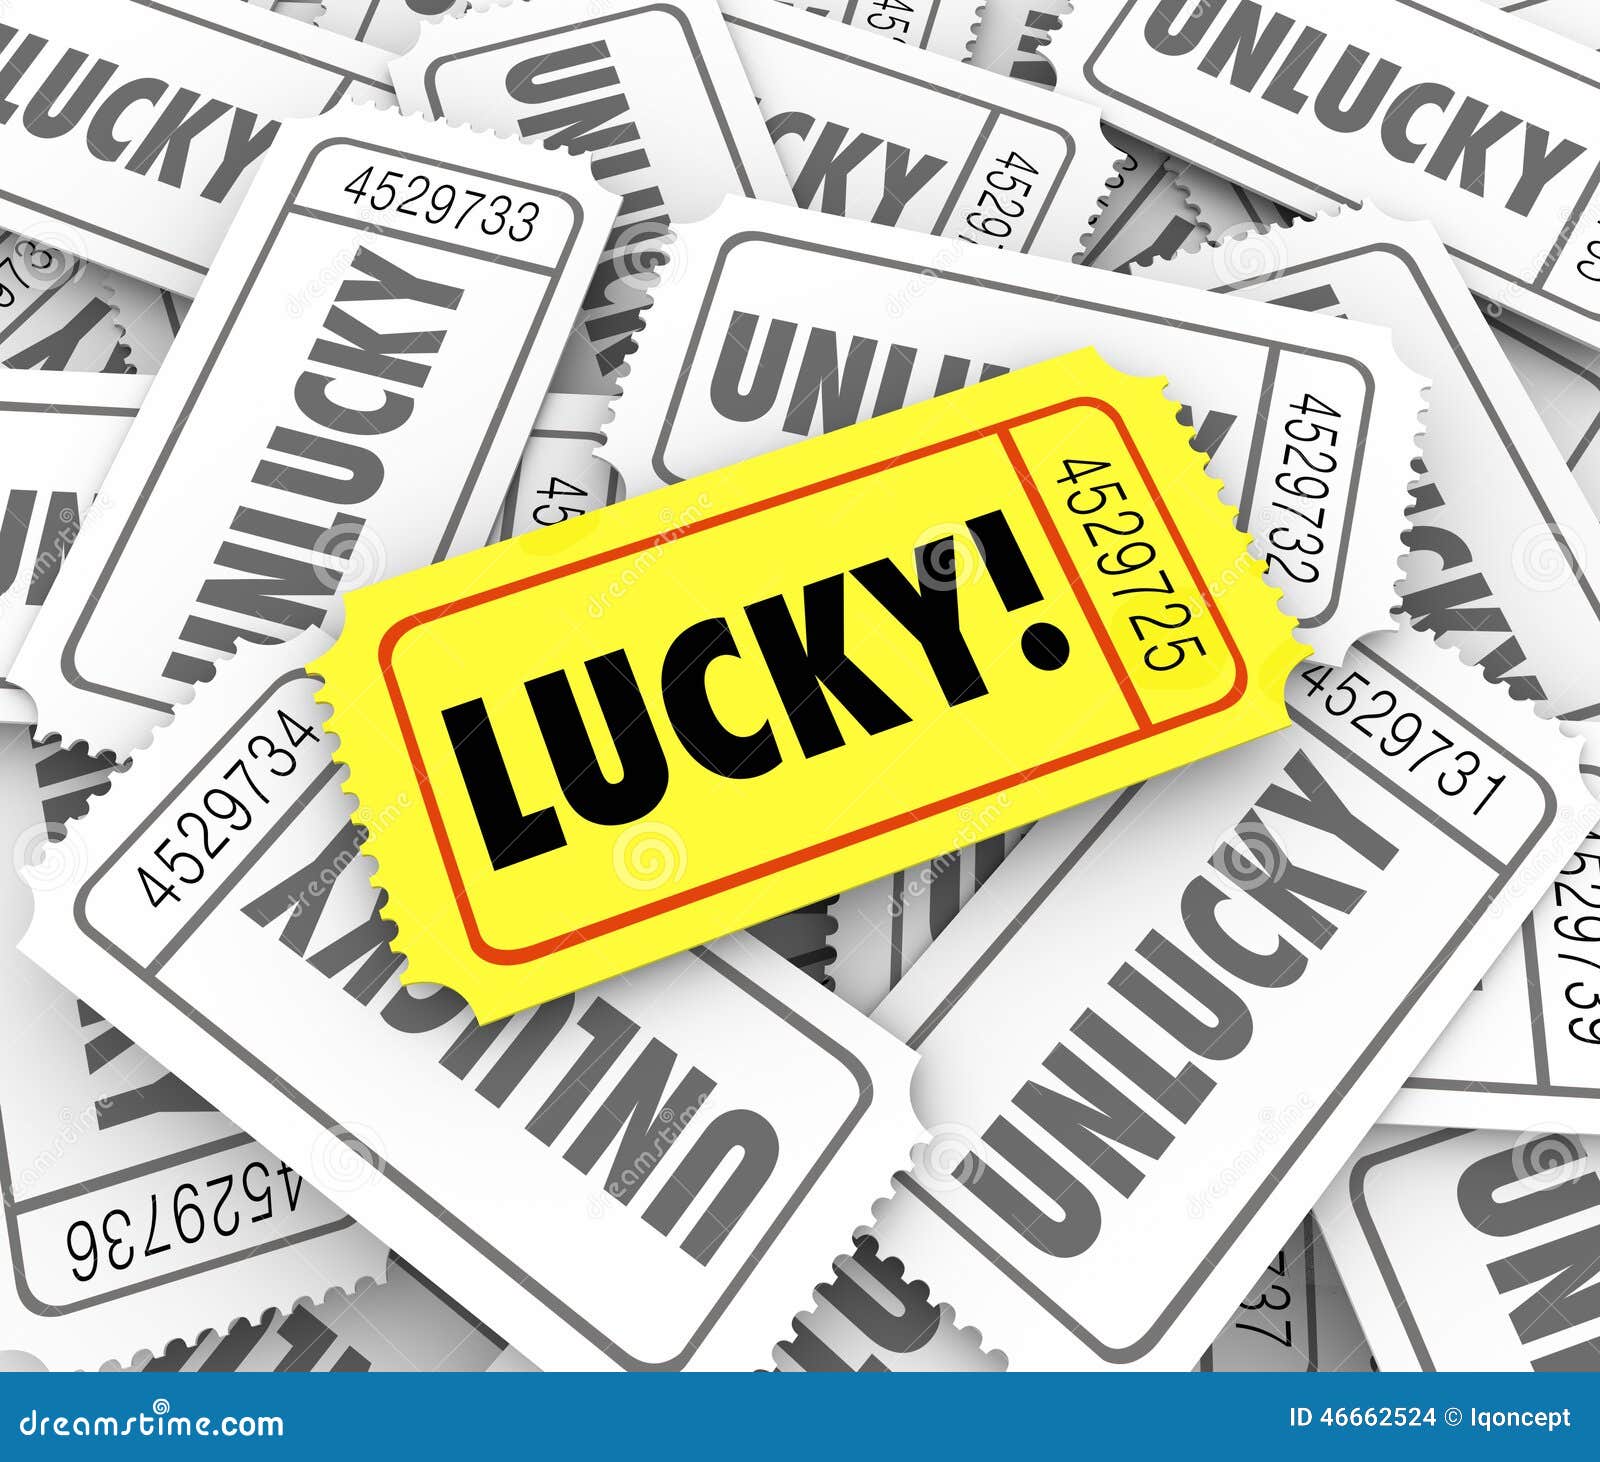 tickets lucky versus unlucky words raffle contest winner odds ch